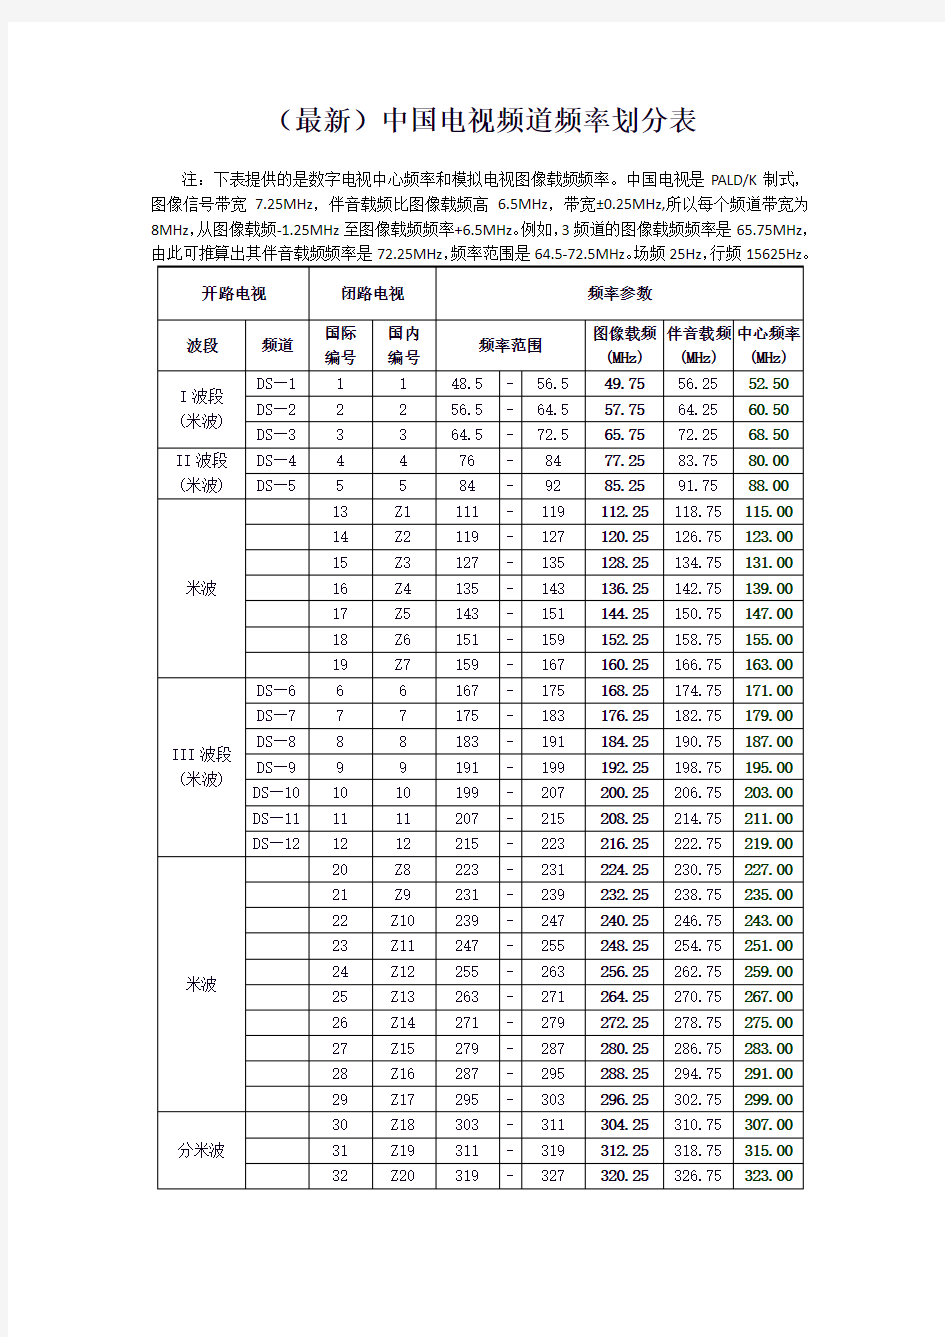 (最新)中国电视频道频率划分表